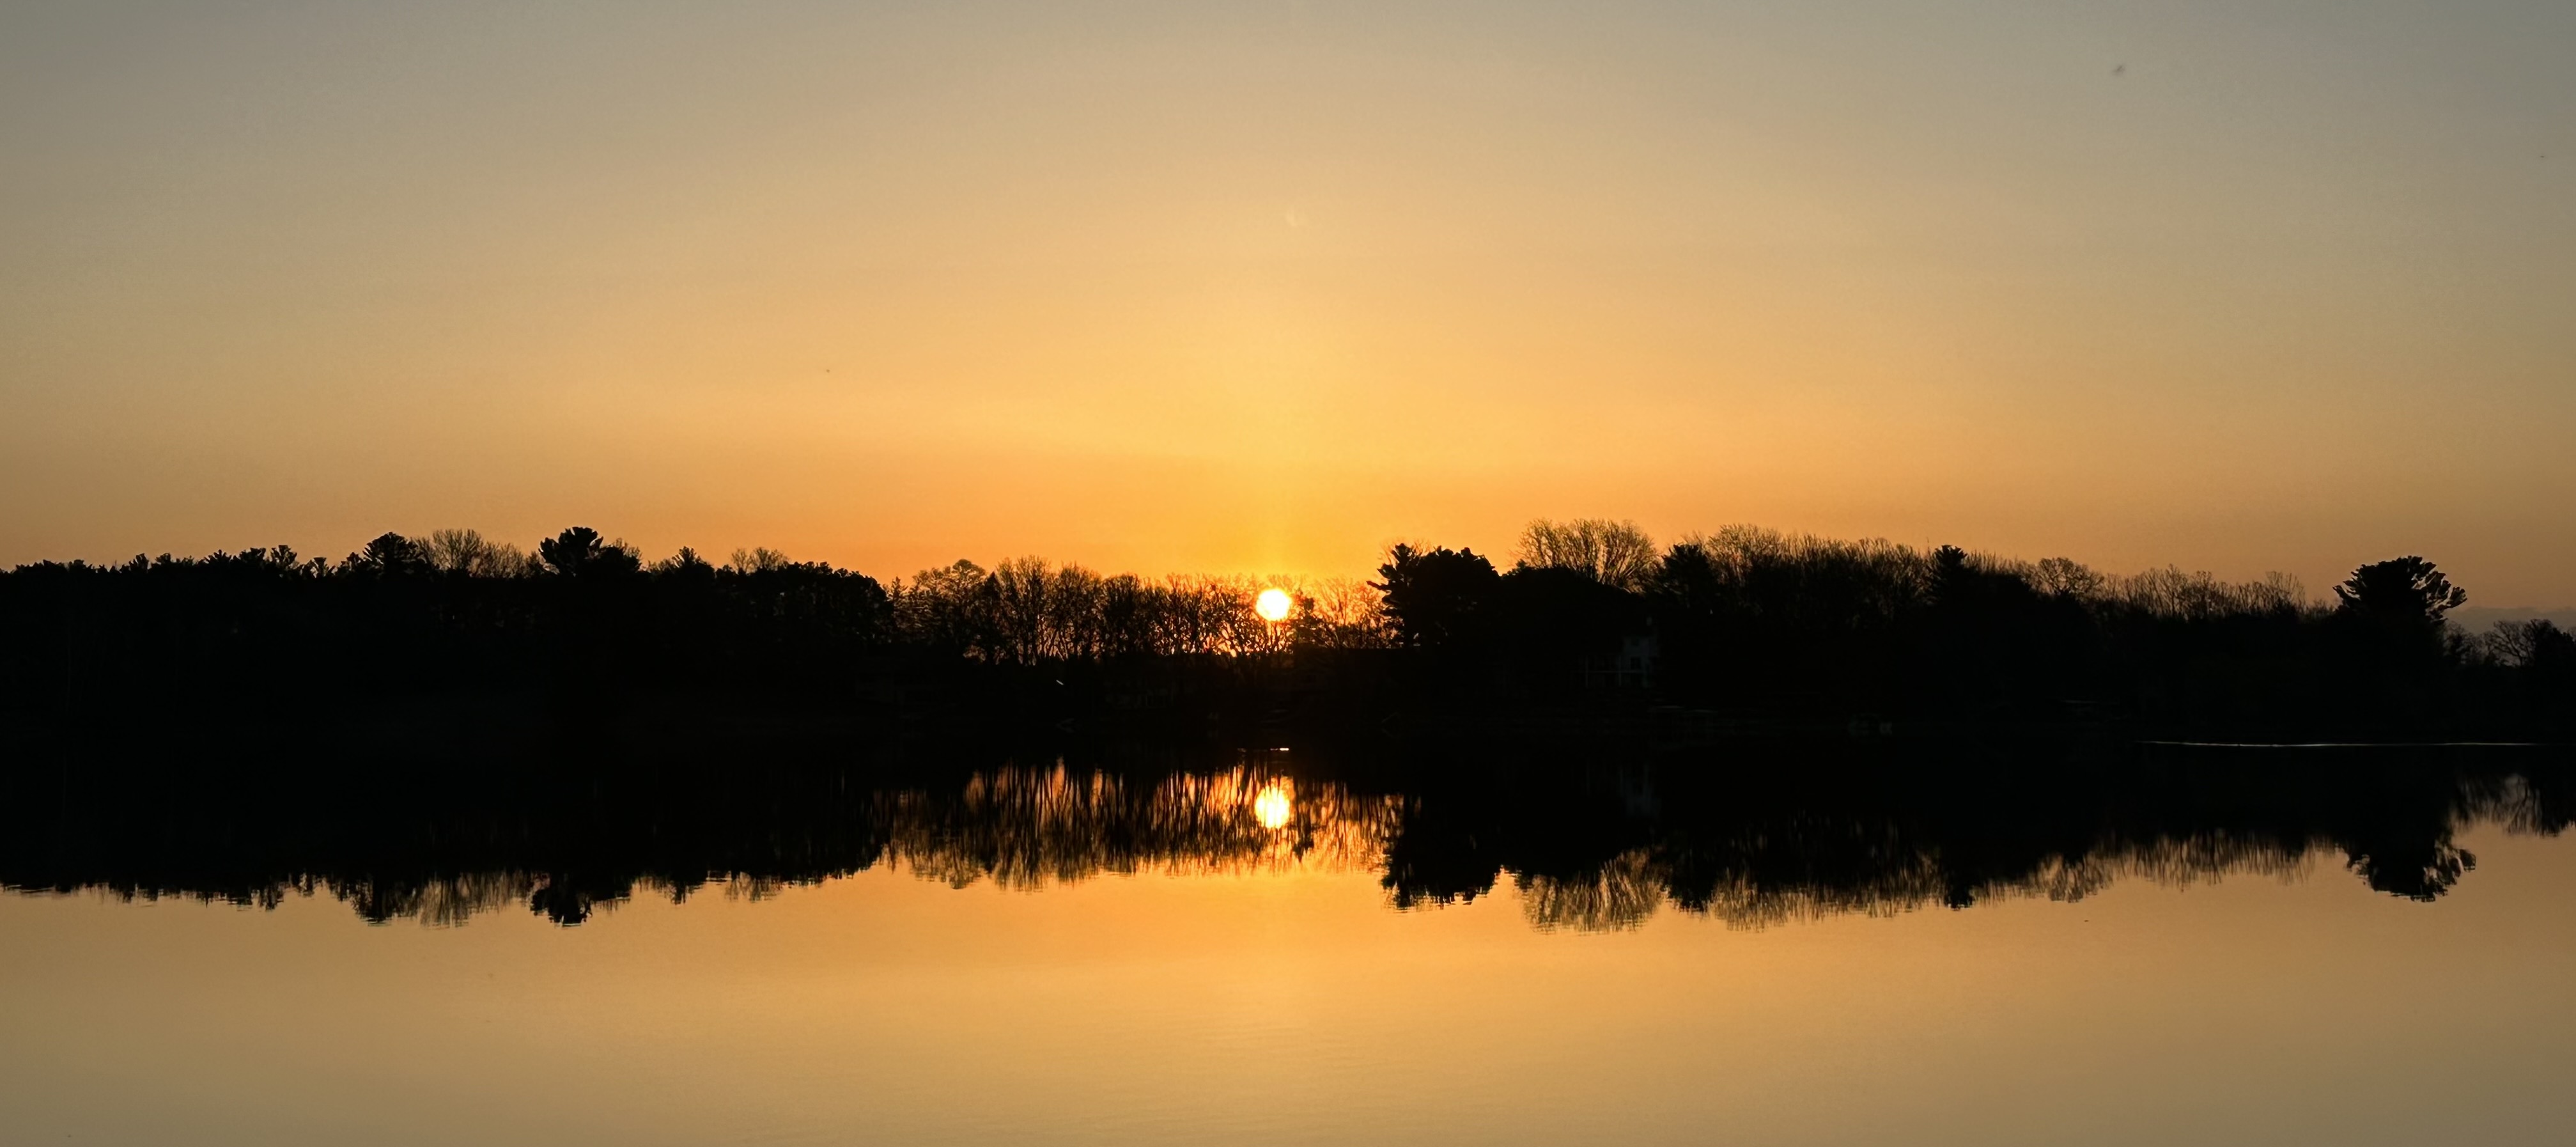 Spectacle Lake sunrise